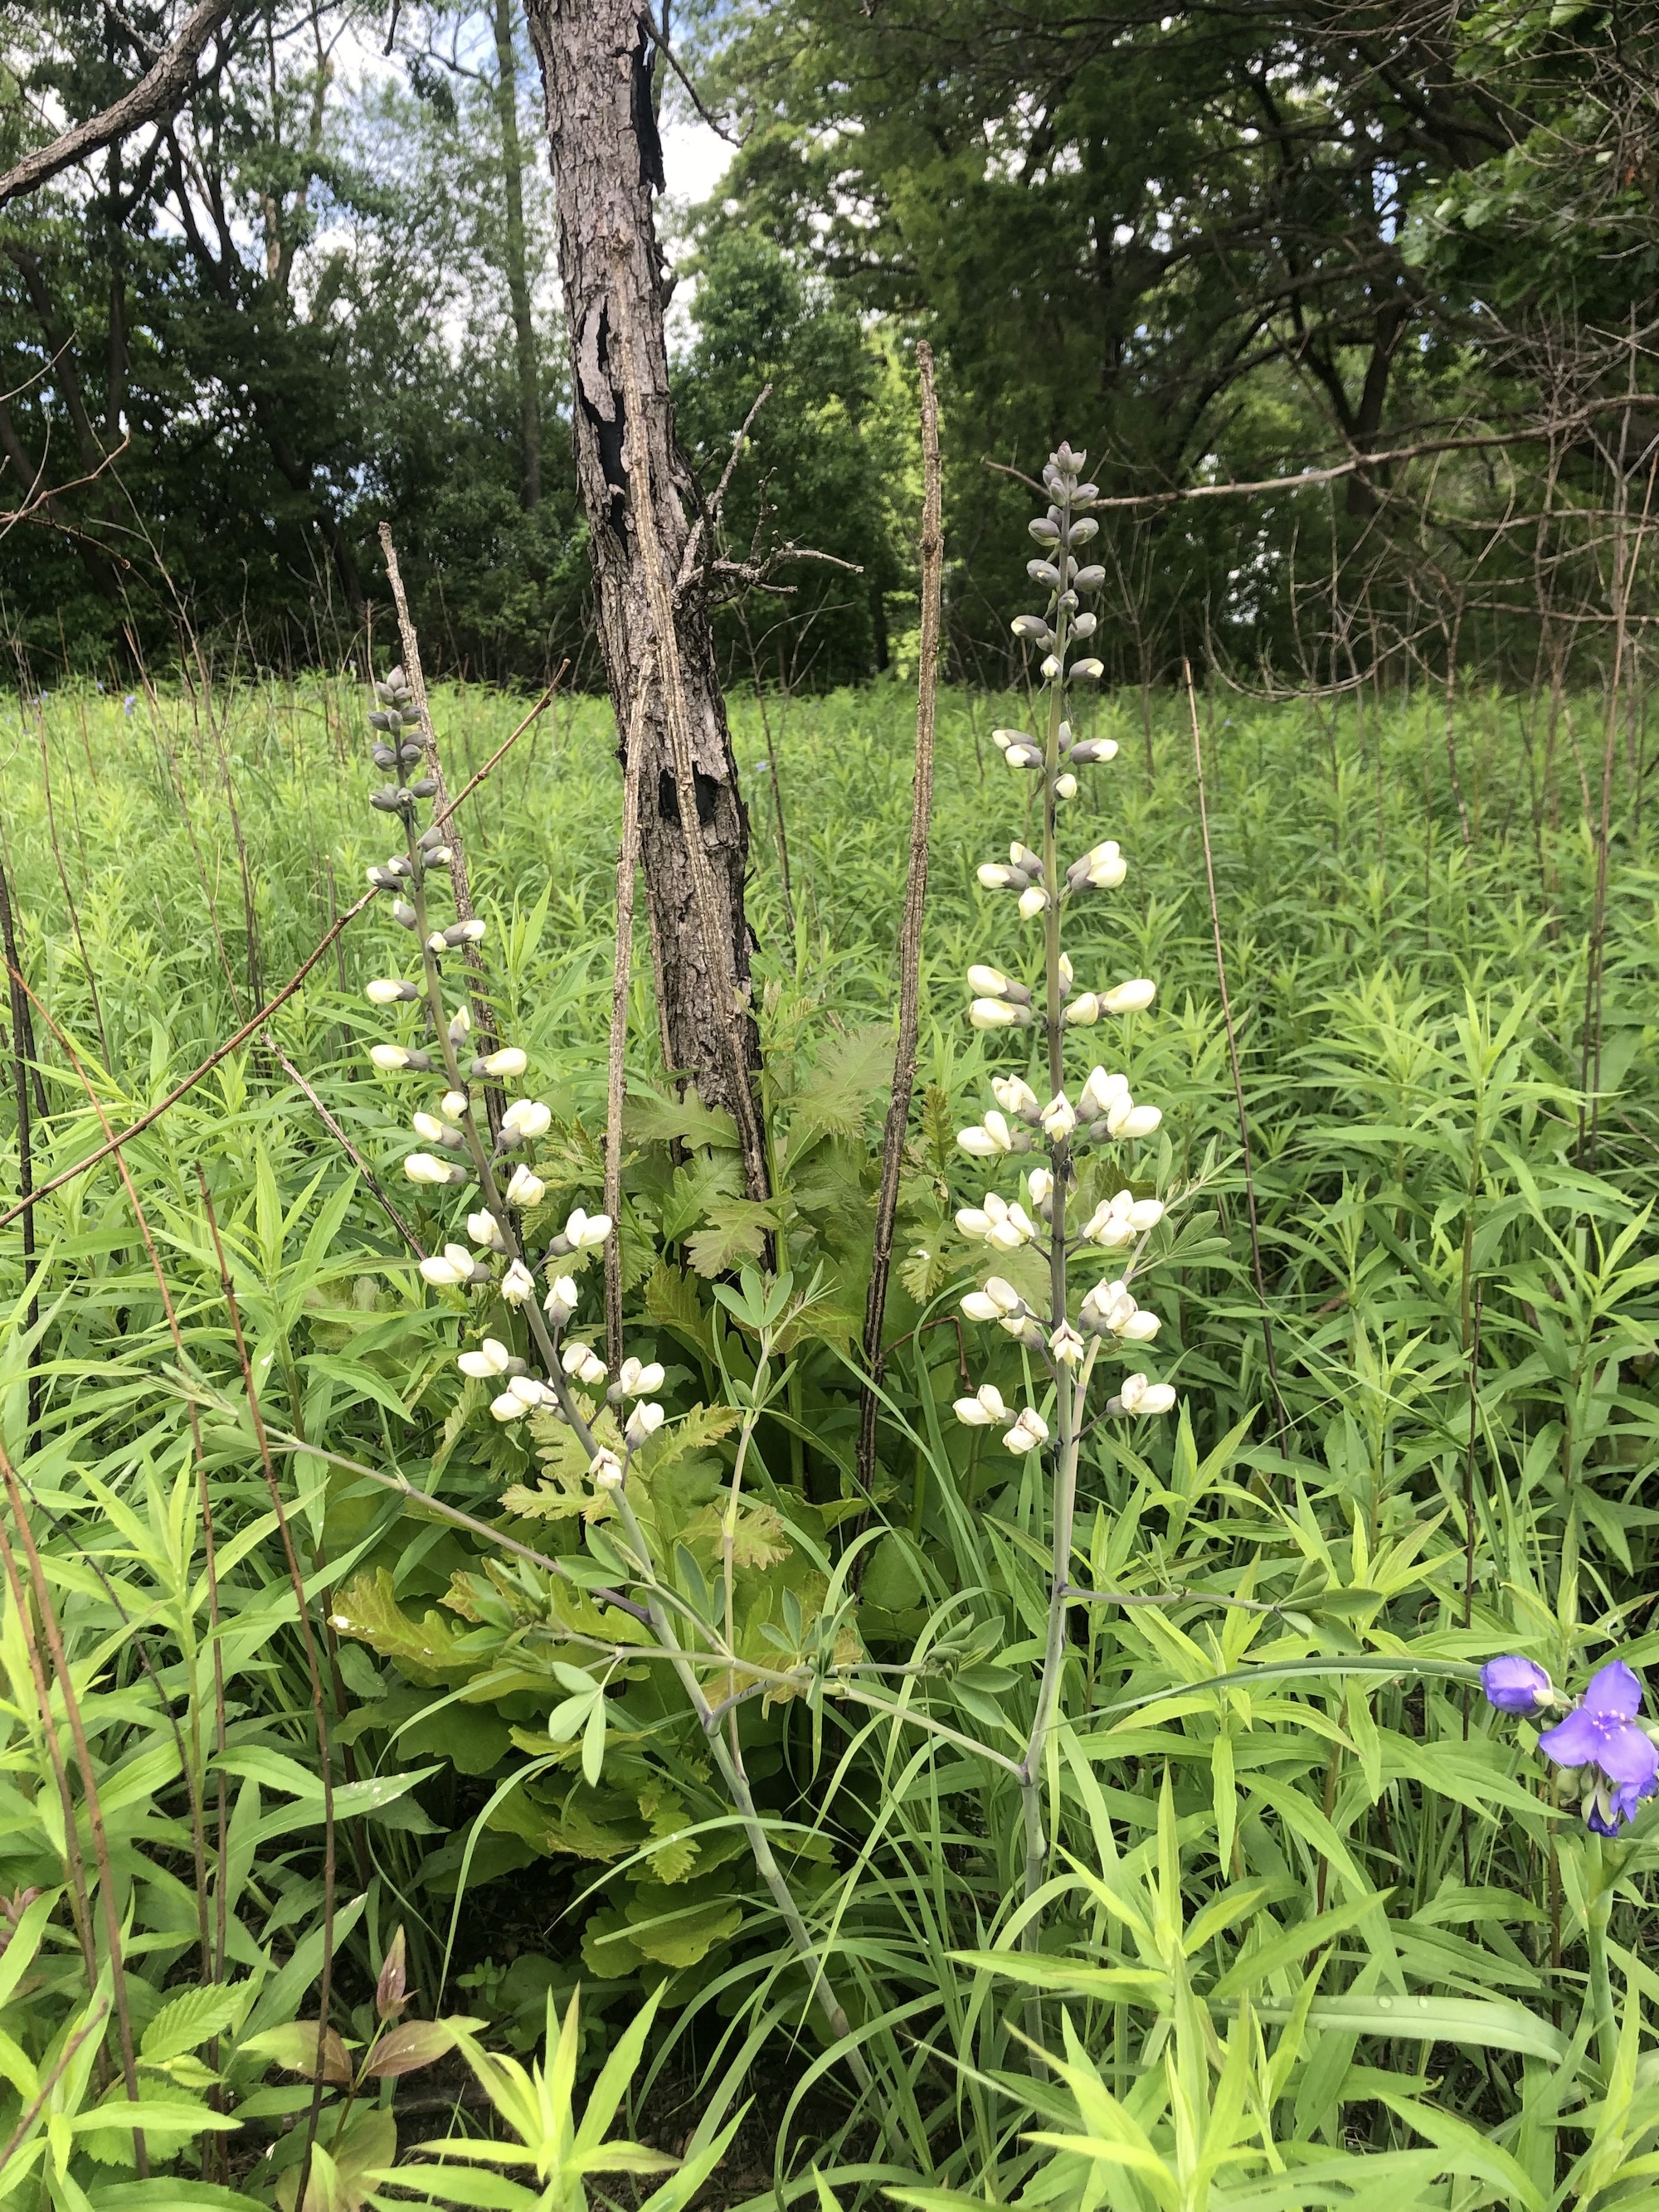 White Wild Indigo in UW Madison Arboretum Curtis Prairiei n Madison, Wisconsin on June 27, 2020